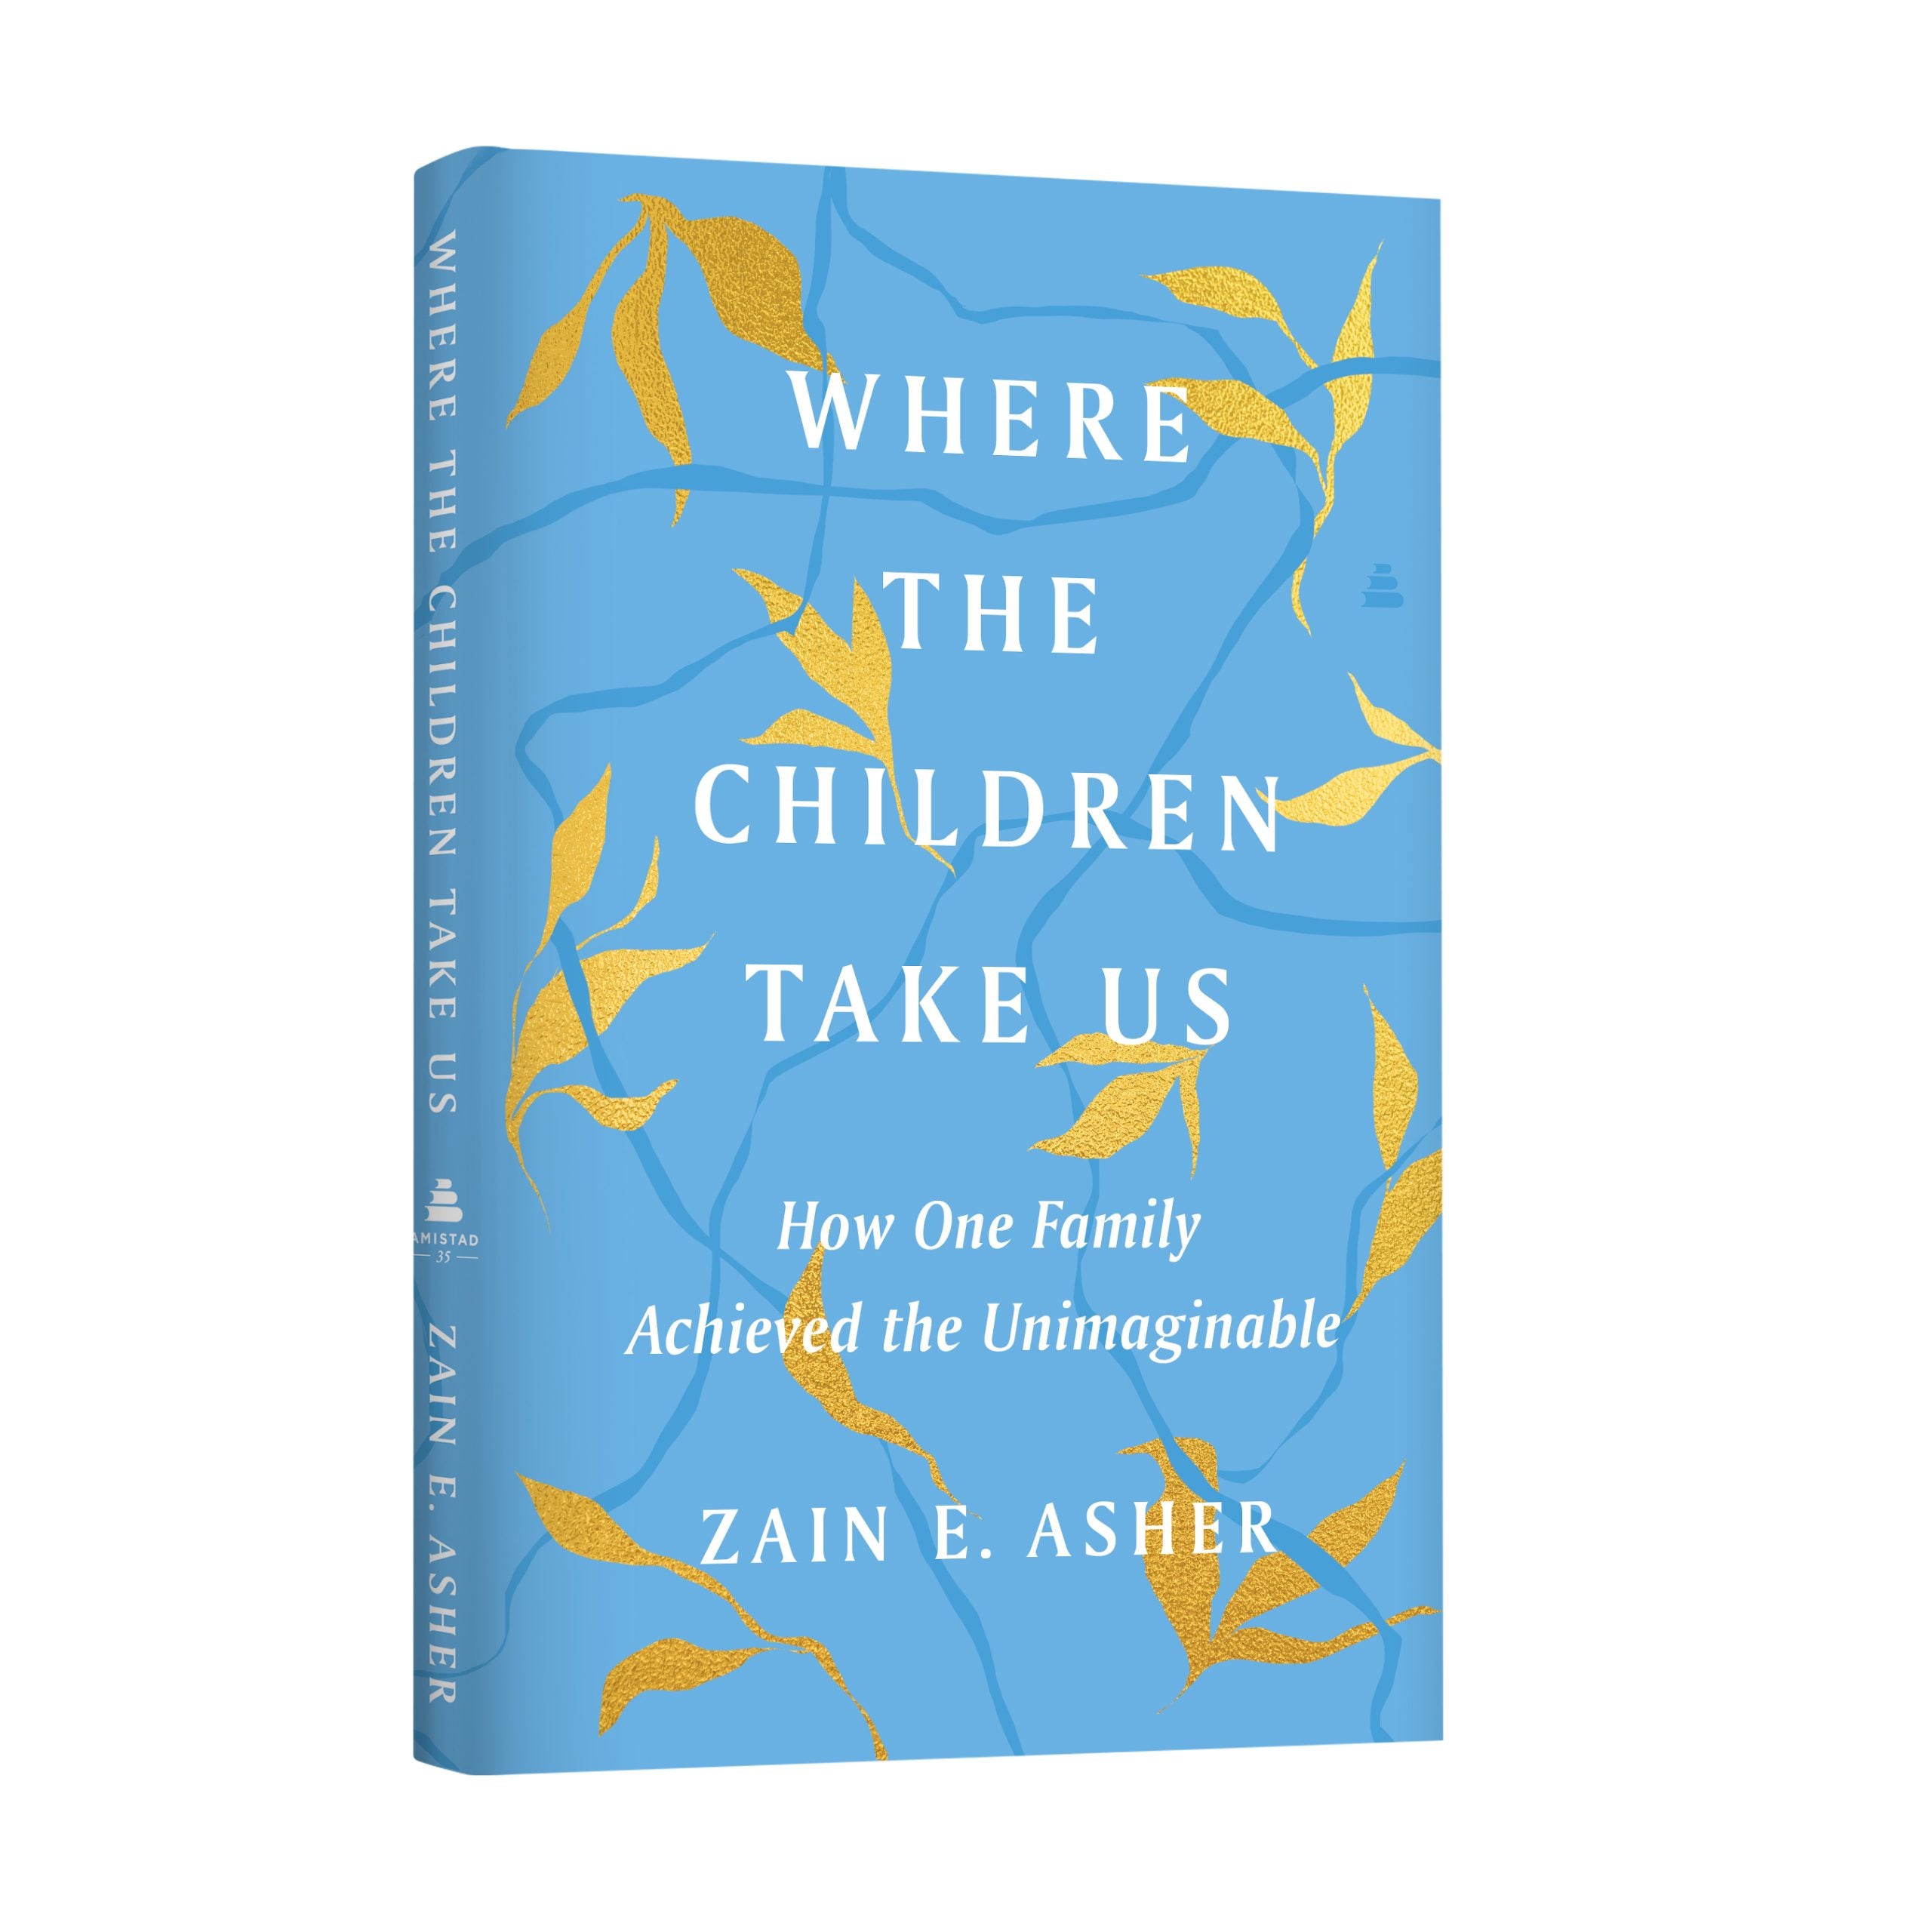  Zain E. Asher Explores Her Family’s Devastating Loss In New Memoir